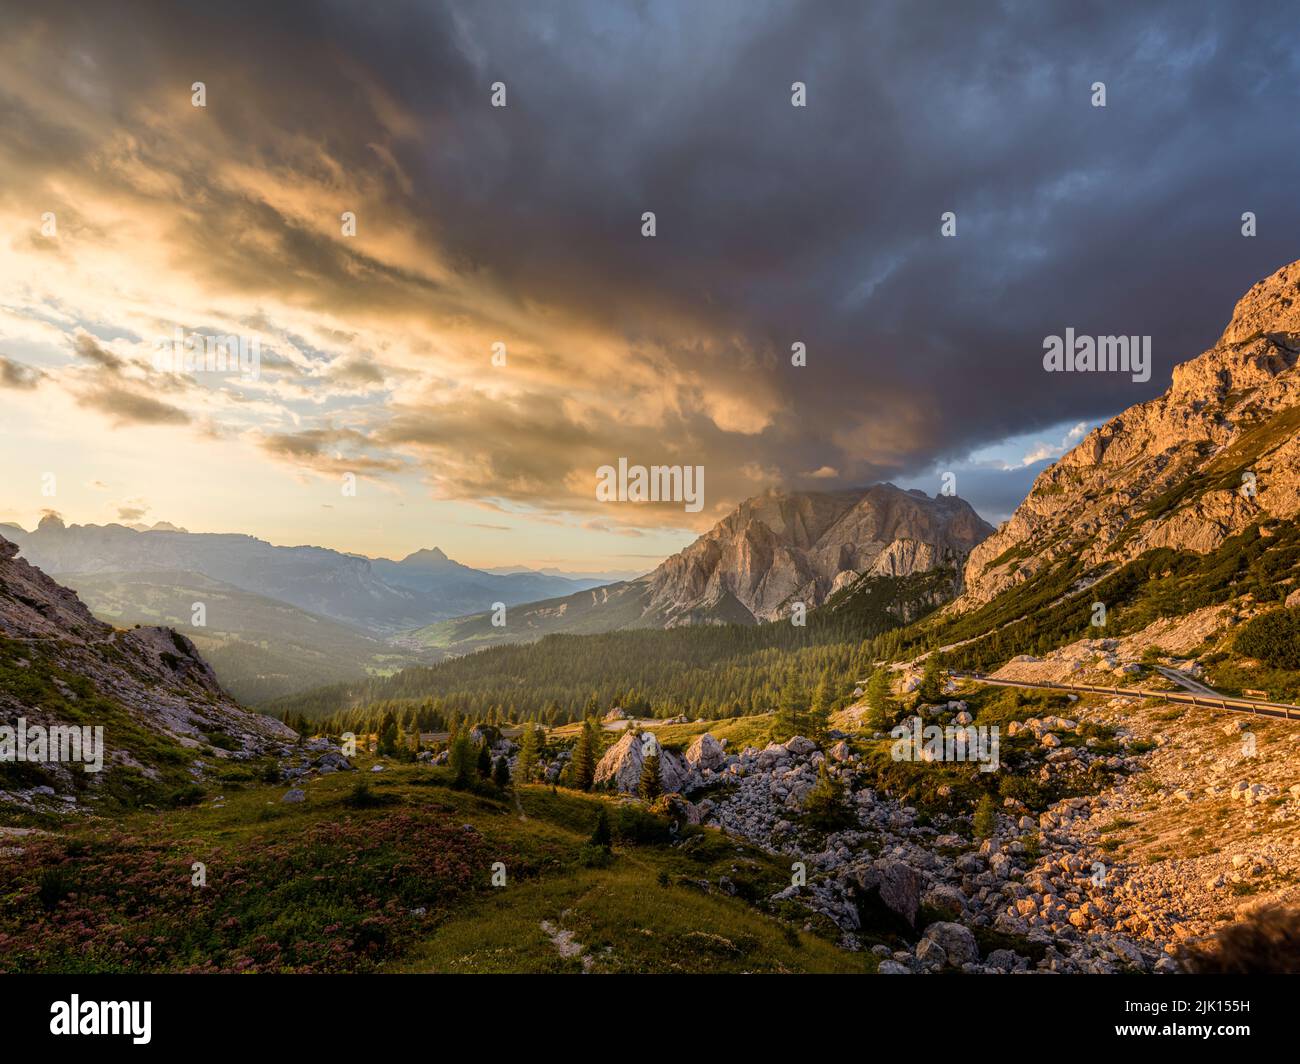 Coucher de soleil sur la montagne des Conturines avec des nuages colorés dans le ciel et lumière dorée sur les pins et dans la vallée, Dolomites, Italie, Europe Banque D'Images